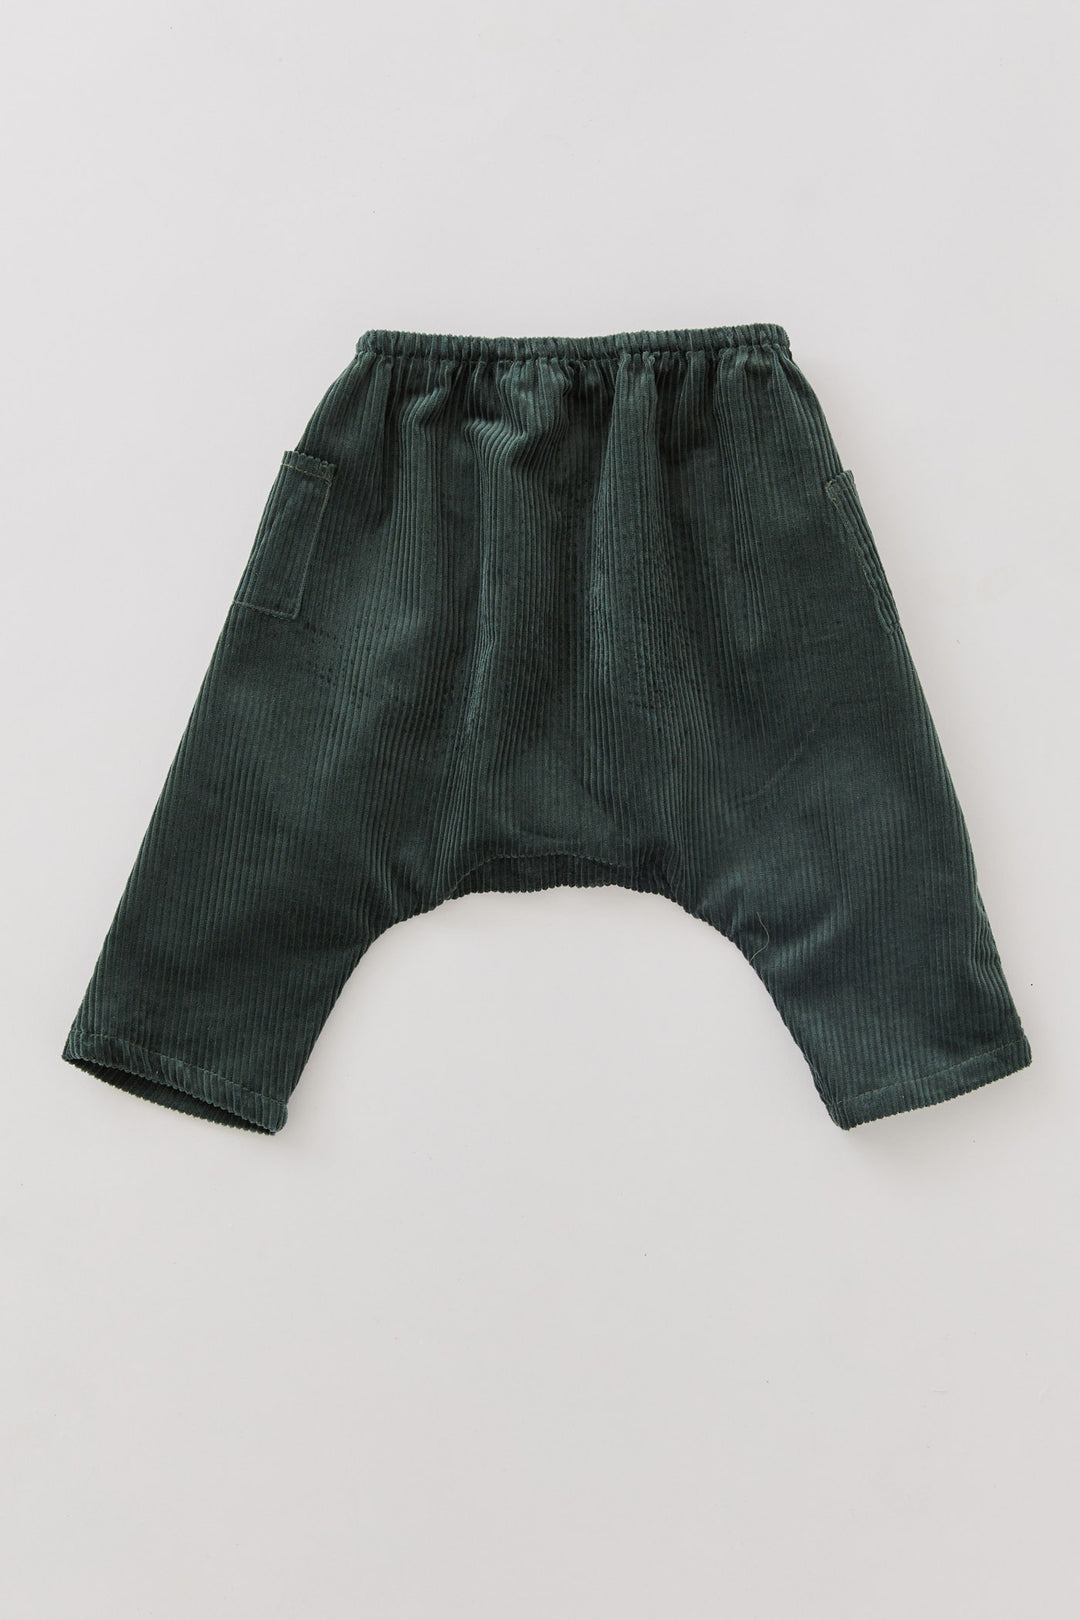 Dark Green Corduroy Apple Trousers - Designed by Ingrid Lewis - Strawberries & Cream